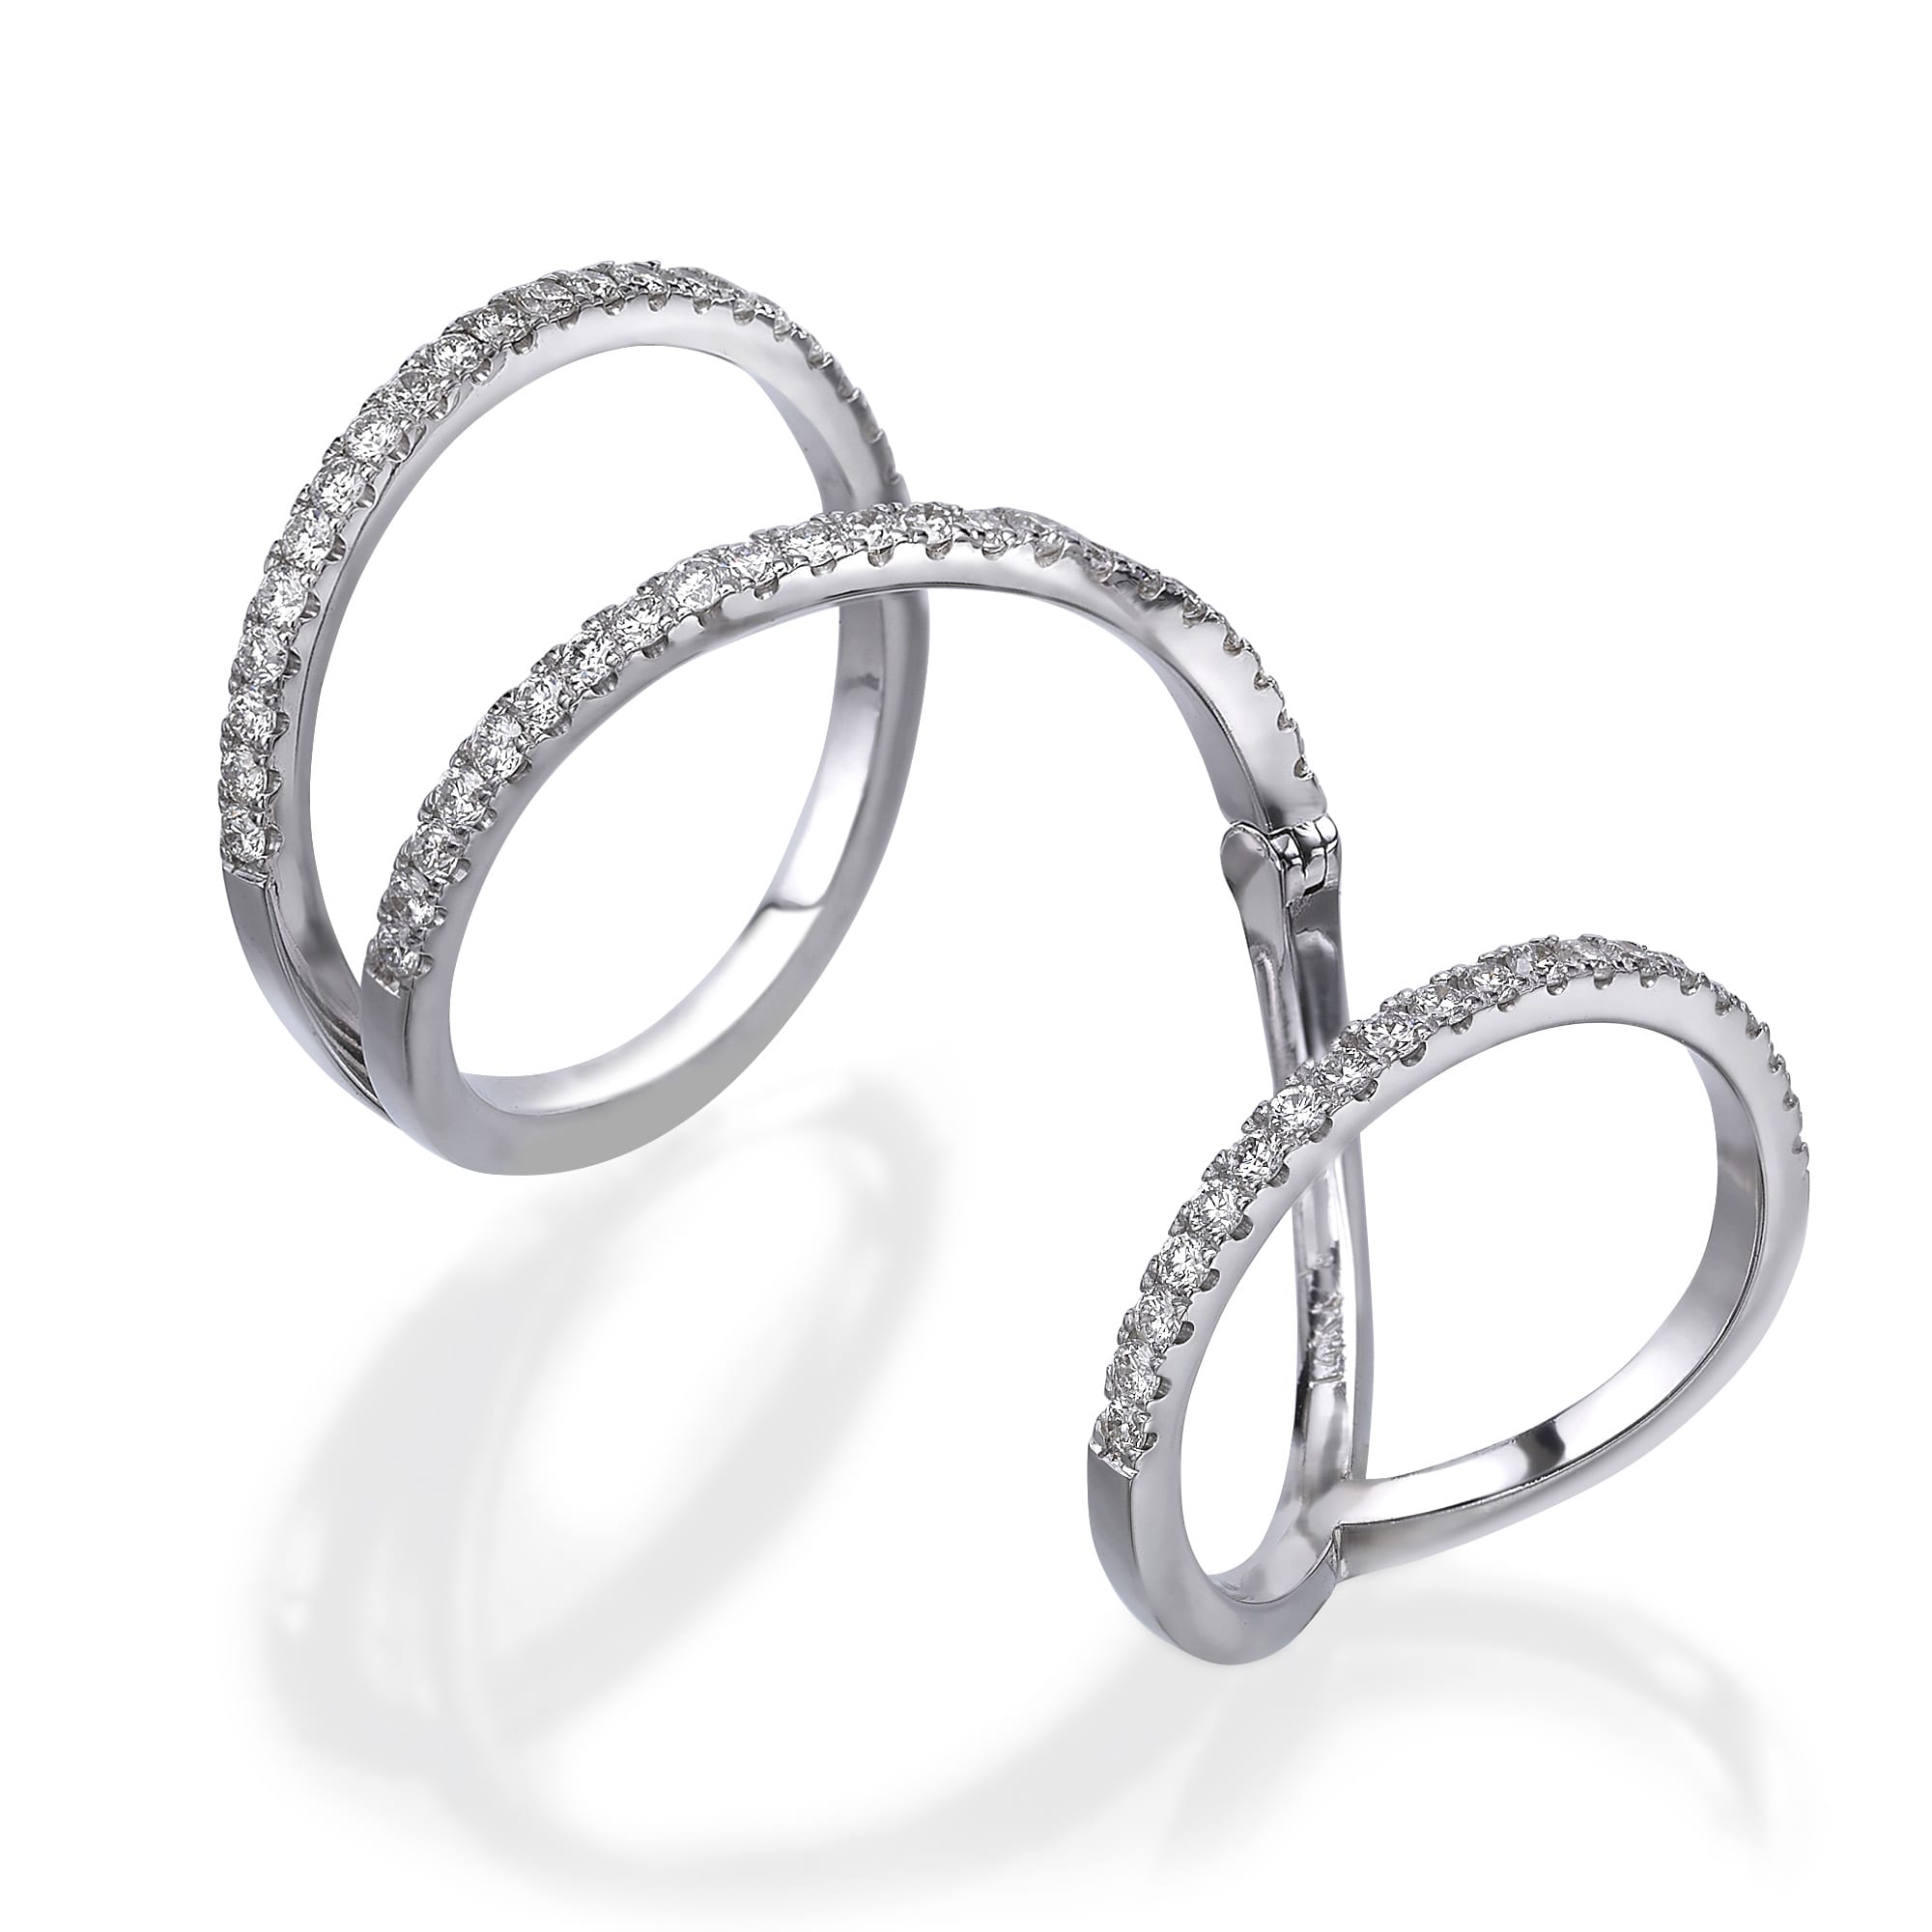 שלוש טבעת יהלומים דגם מורגן מעוצבות באלגנטיות, כל אחת מעוטרת בשורה של אבנים נוצצות, מסודרות להפליא וחופפות על משטח מחזיר אור.